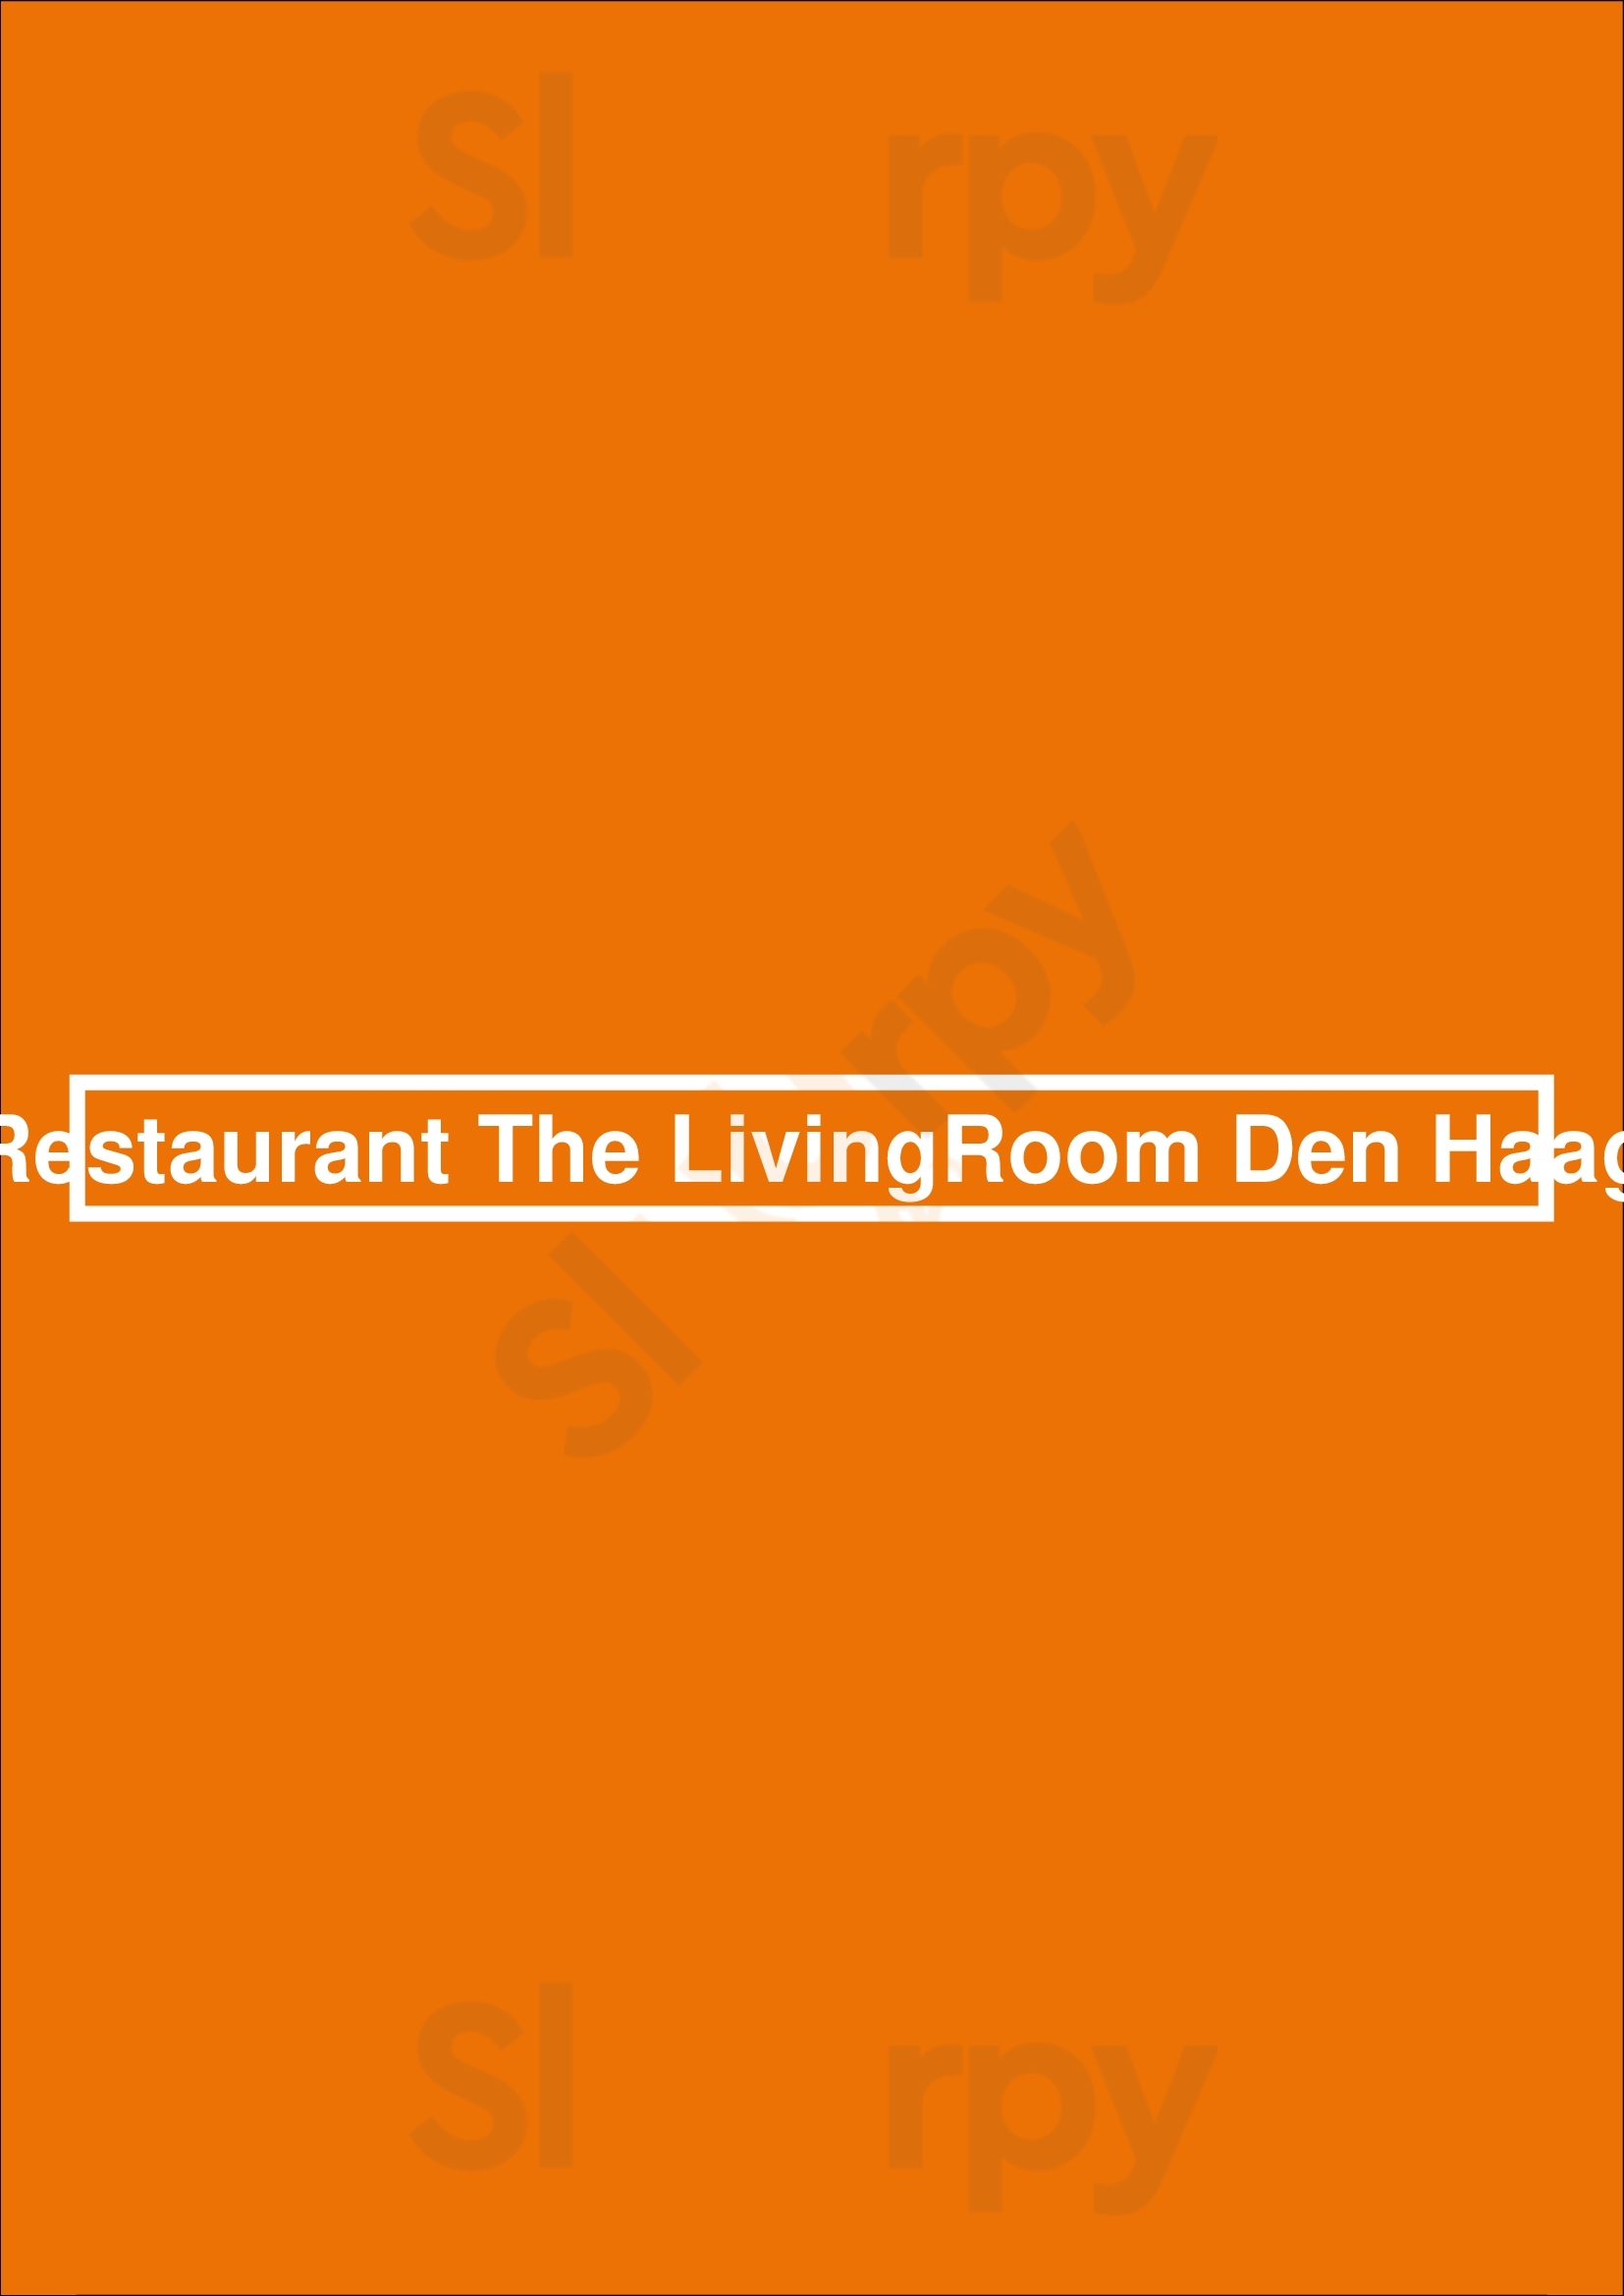 Restaurant The Livingroom Den Haag Den Haag Menu - 1